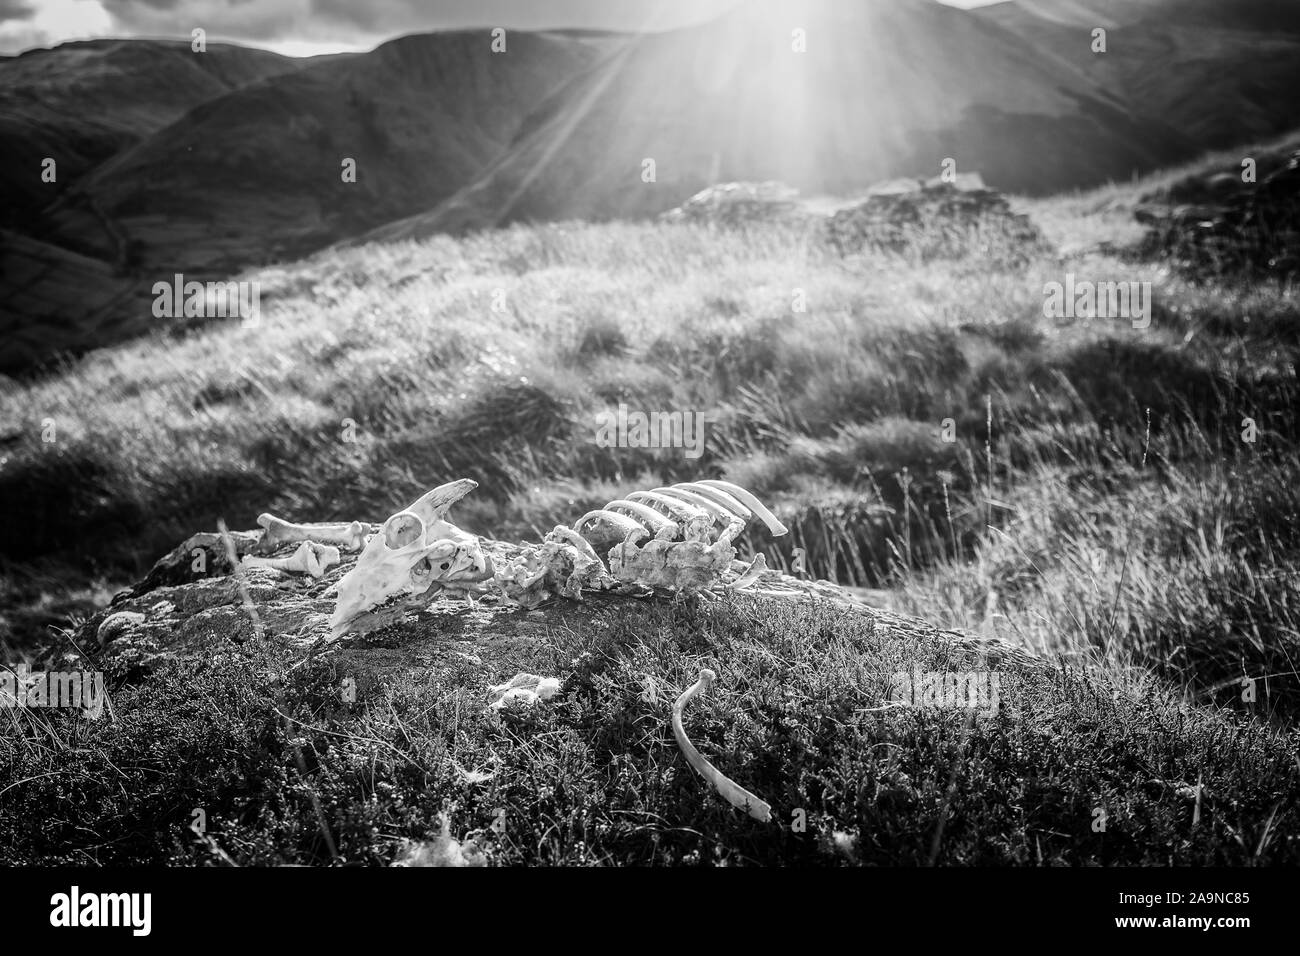 Moutons éparpillés sur squelette rock montagne ensoleillée à jour d'automne dans la région de Lake District, UK - Monochrome Modifier Banque D'Images